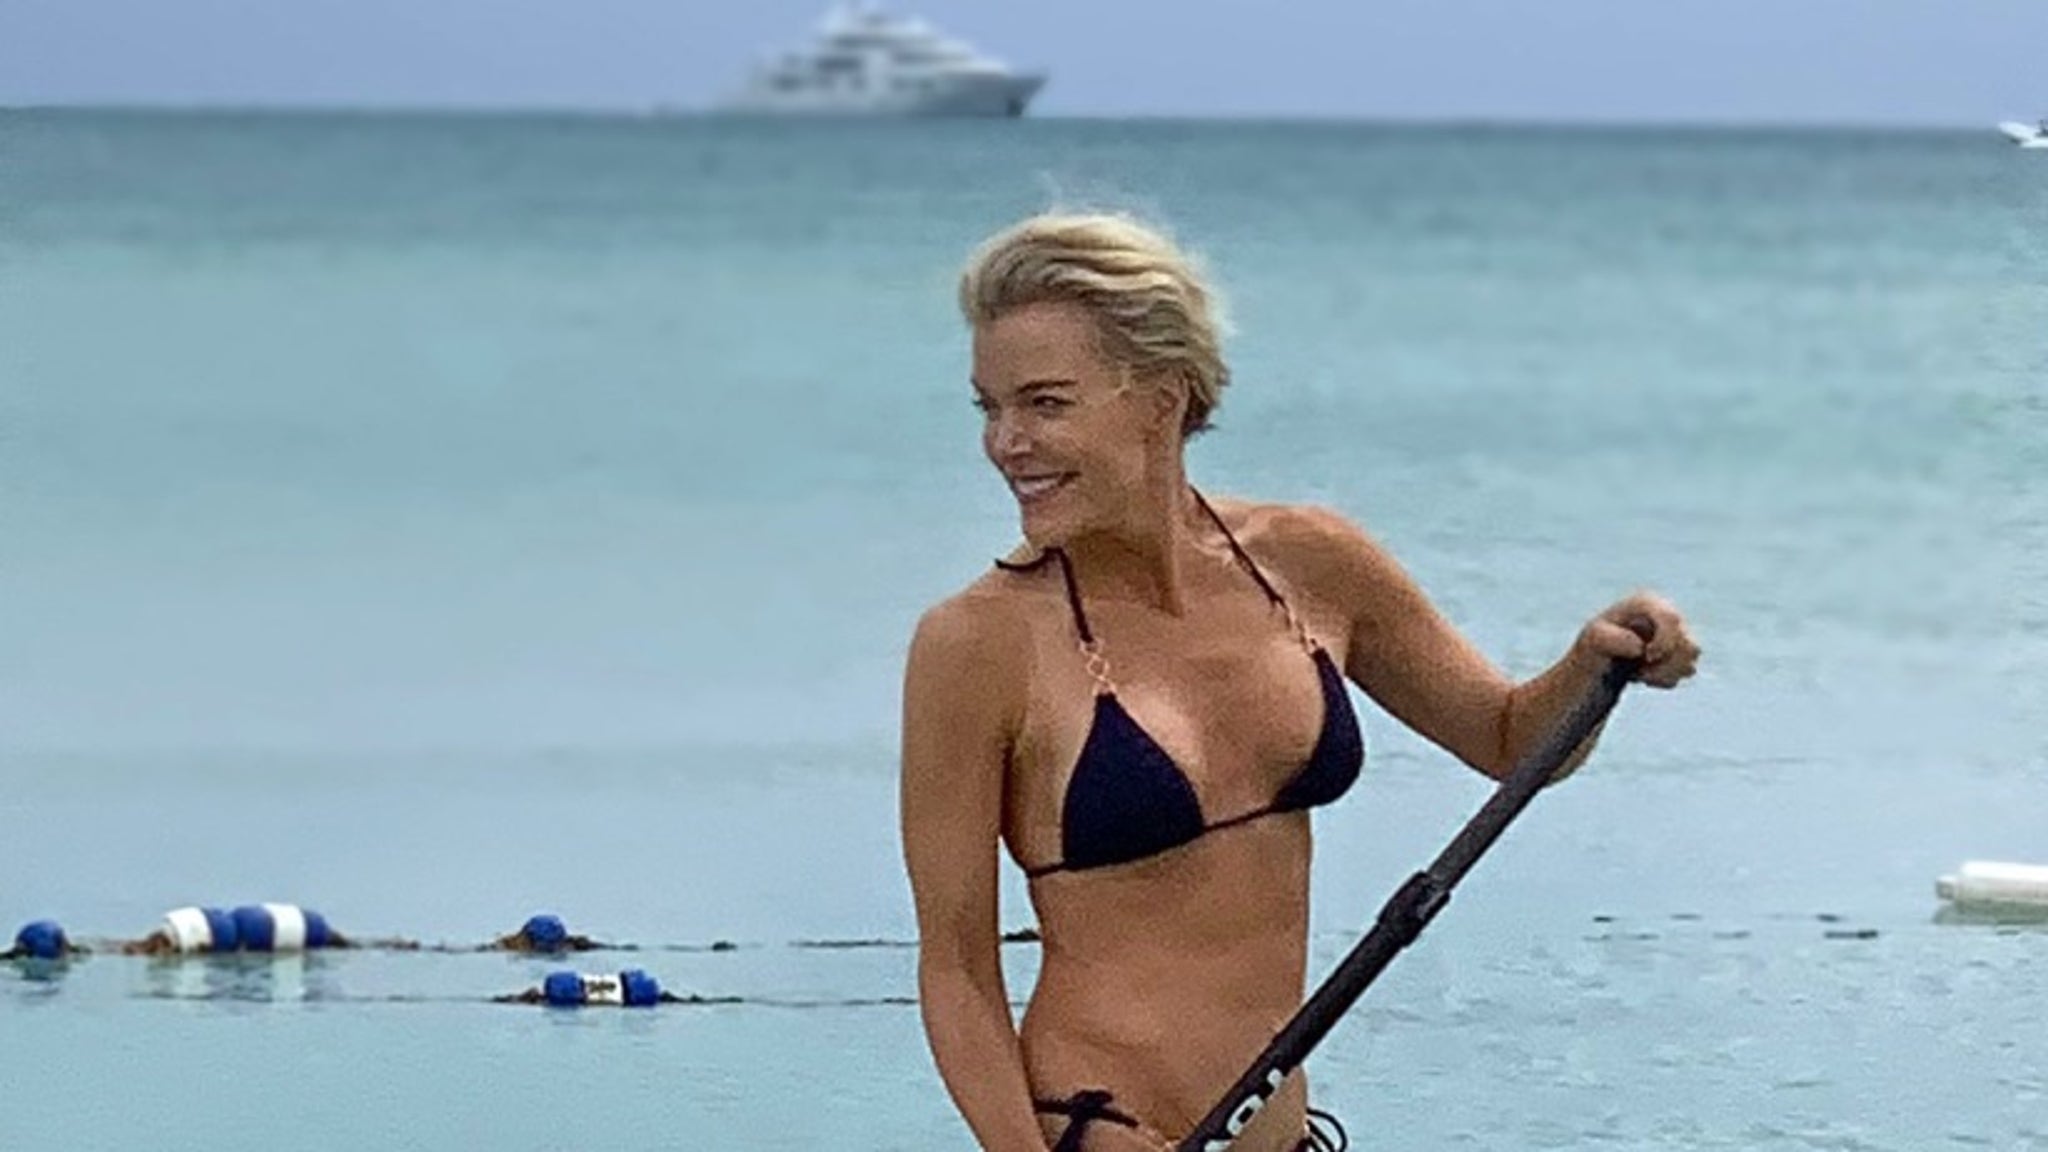 Megyn Kelly's Hot Bikini Bod in the Bahamas.